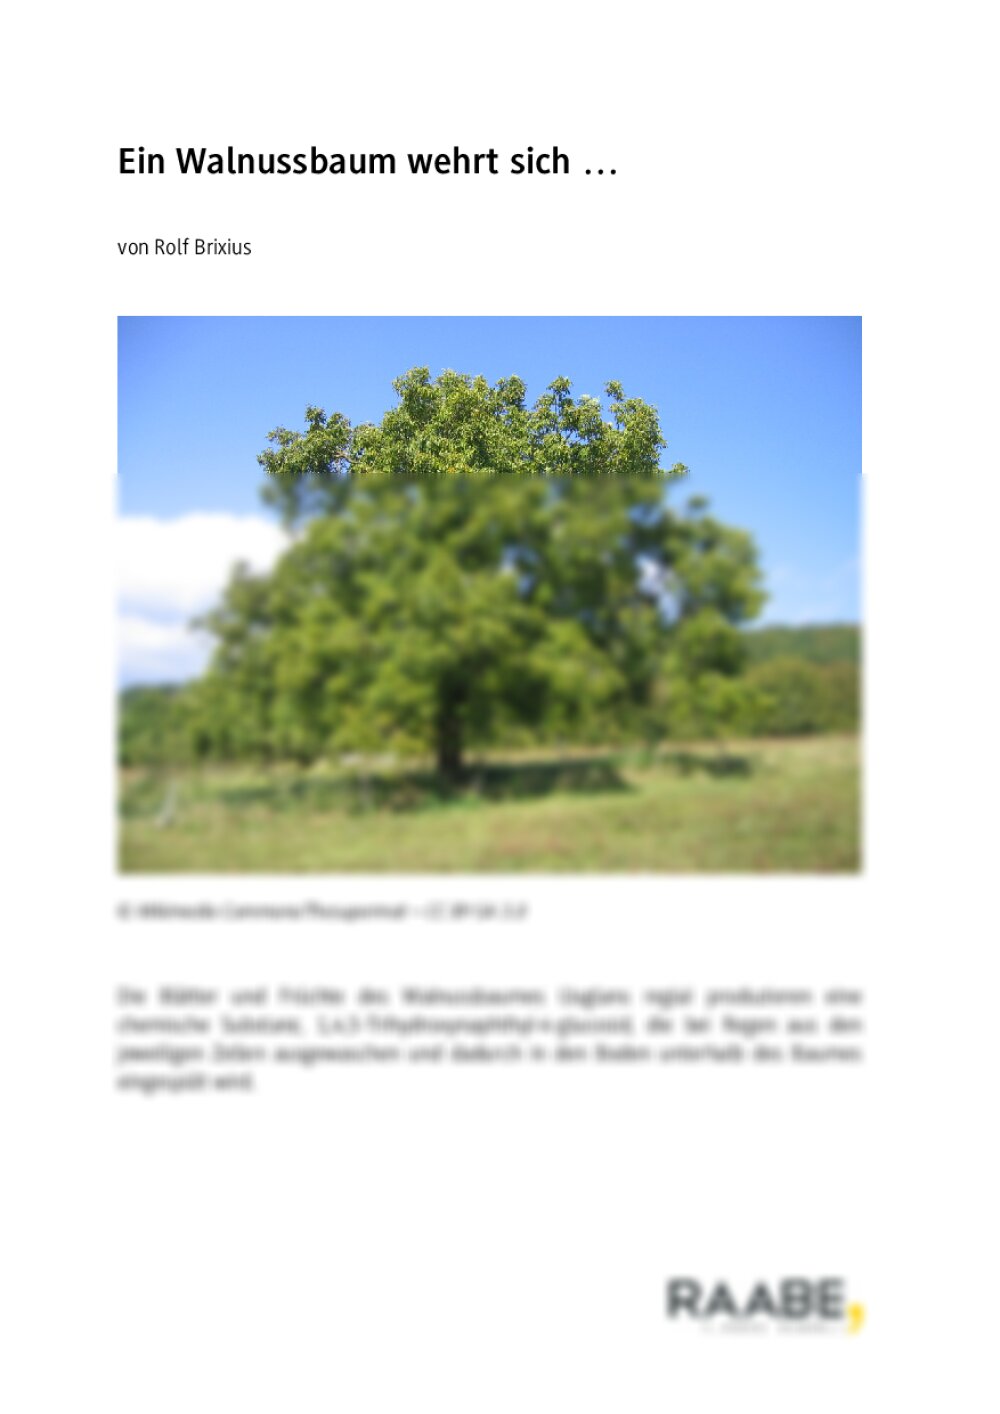 Die Chemie des Walnussbaums - Seite 1